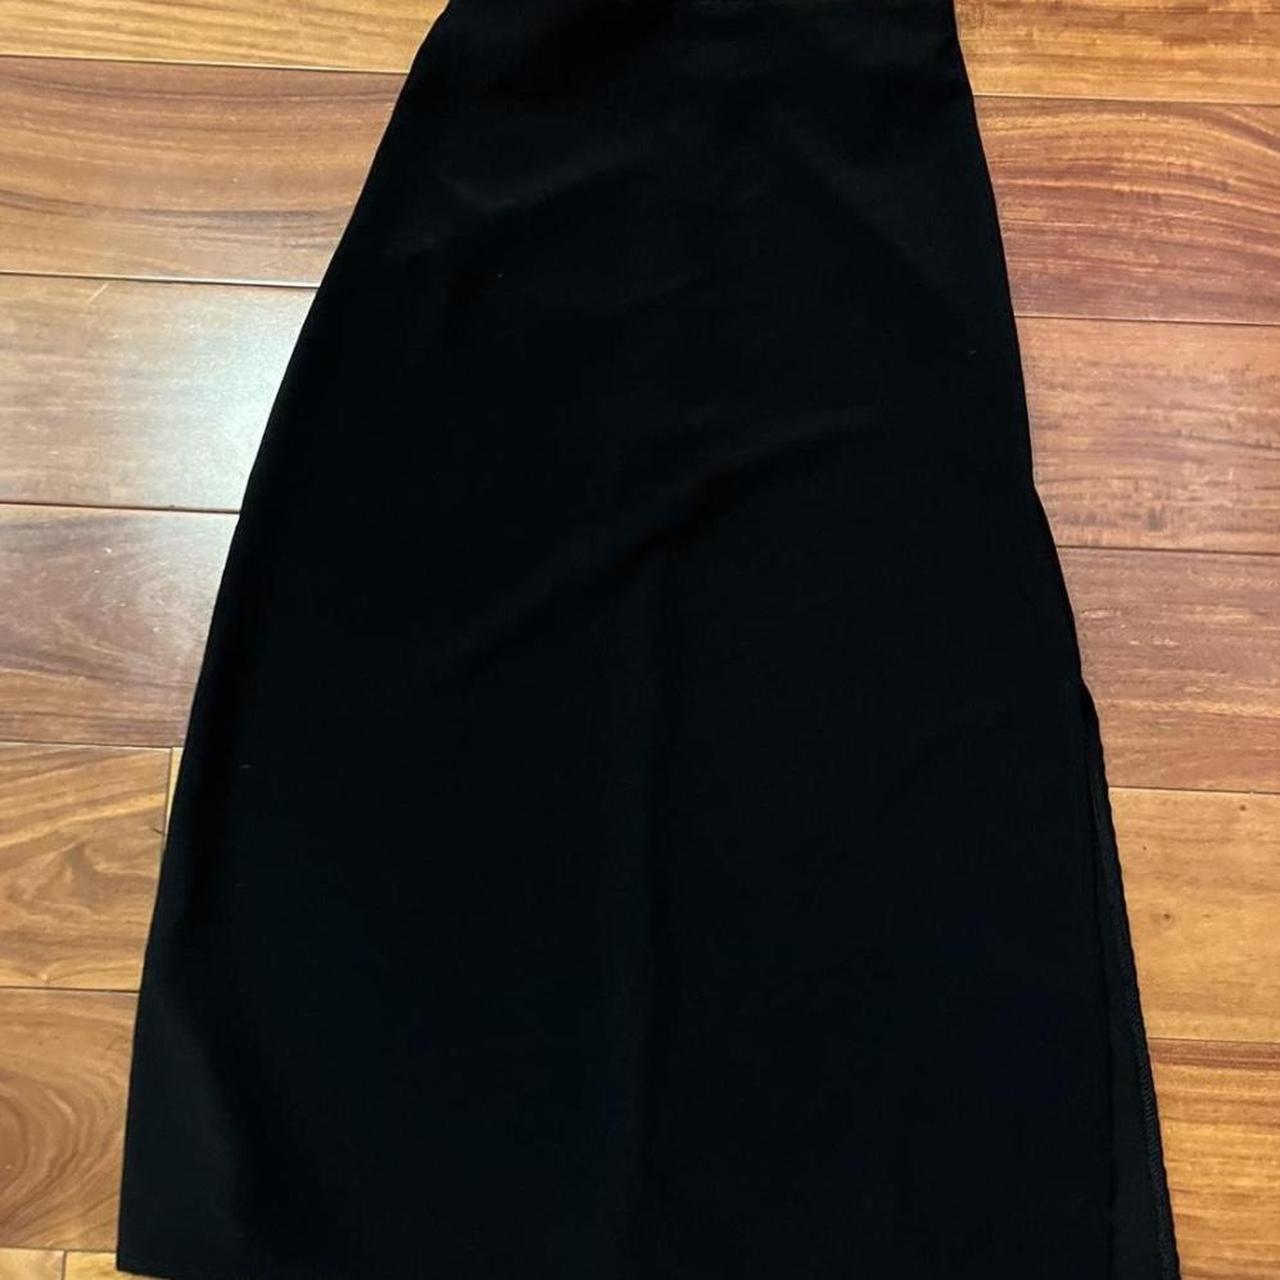 brand new, brandy Melville midi skirt slit on one side - Depop